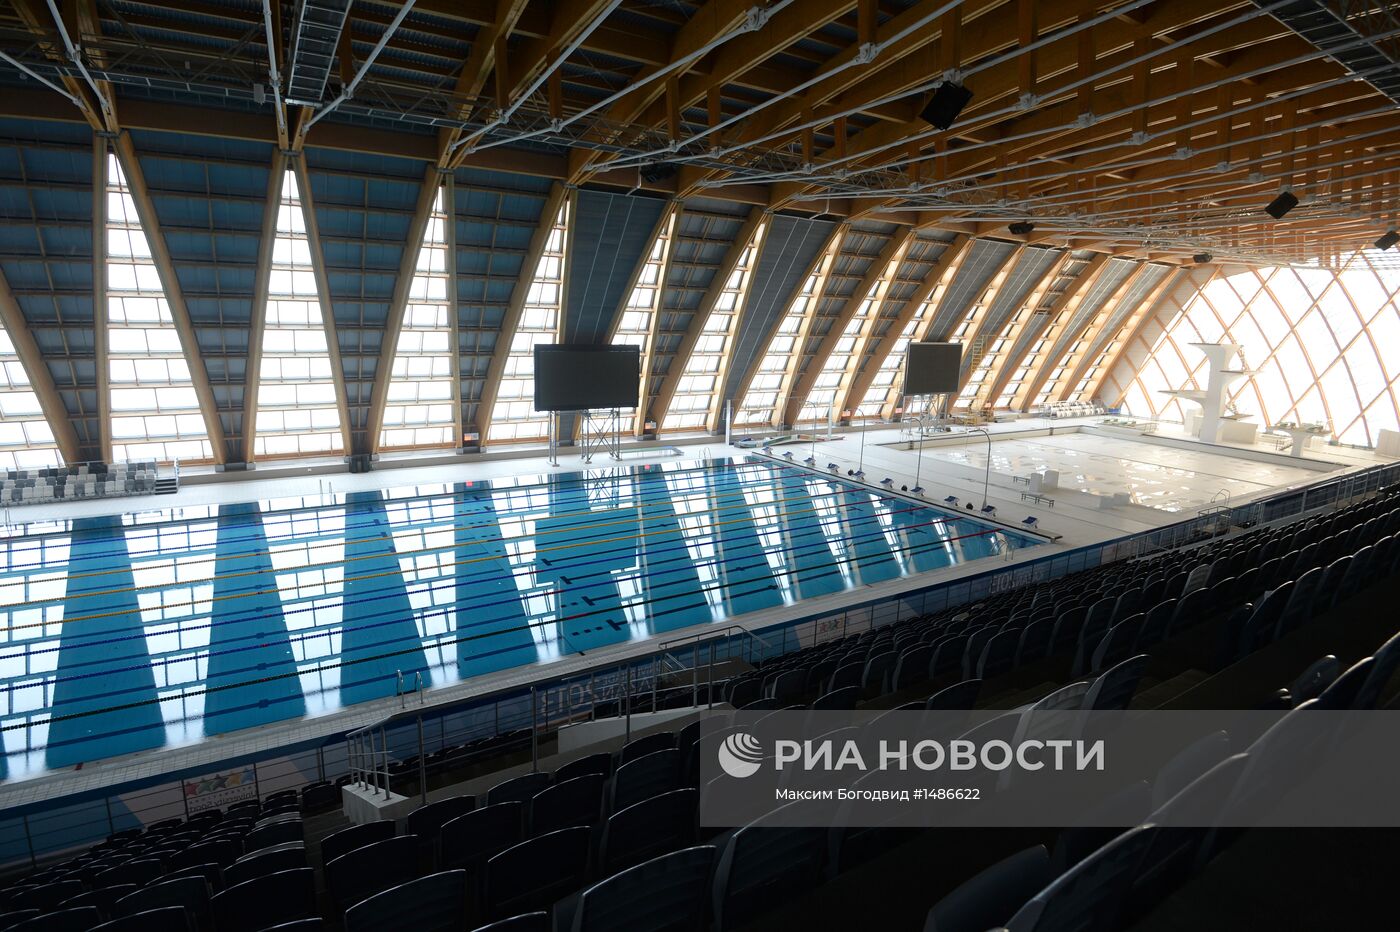 Пресс-тур по спортивным объектам Универсиады - 2013 в Казани